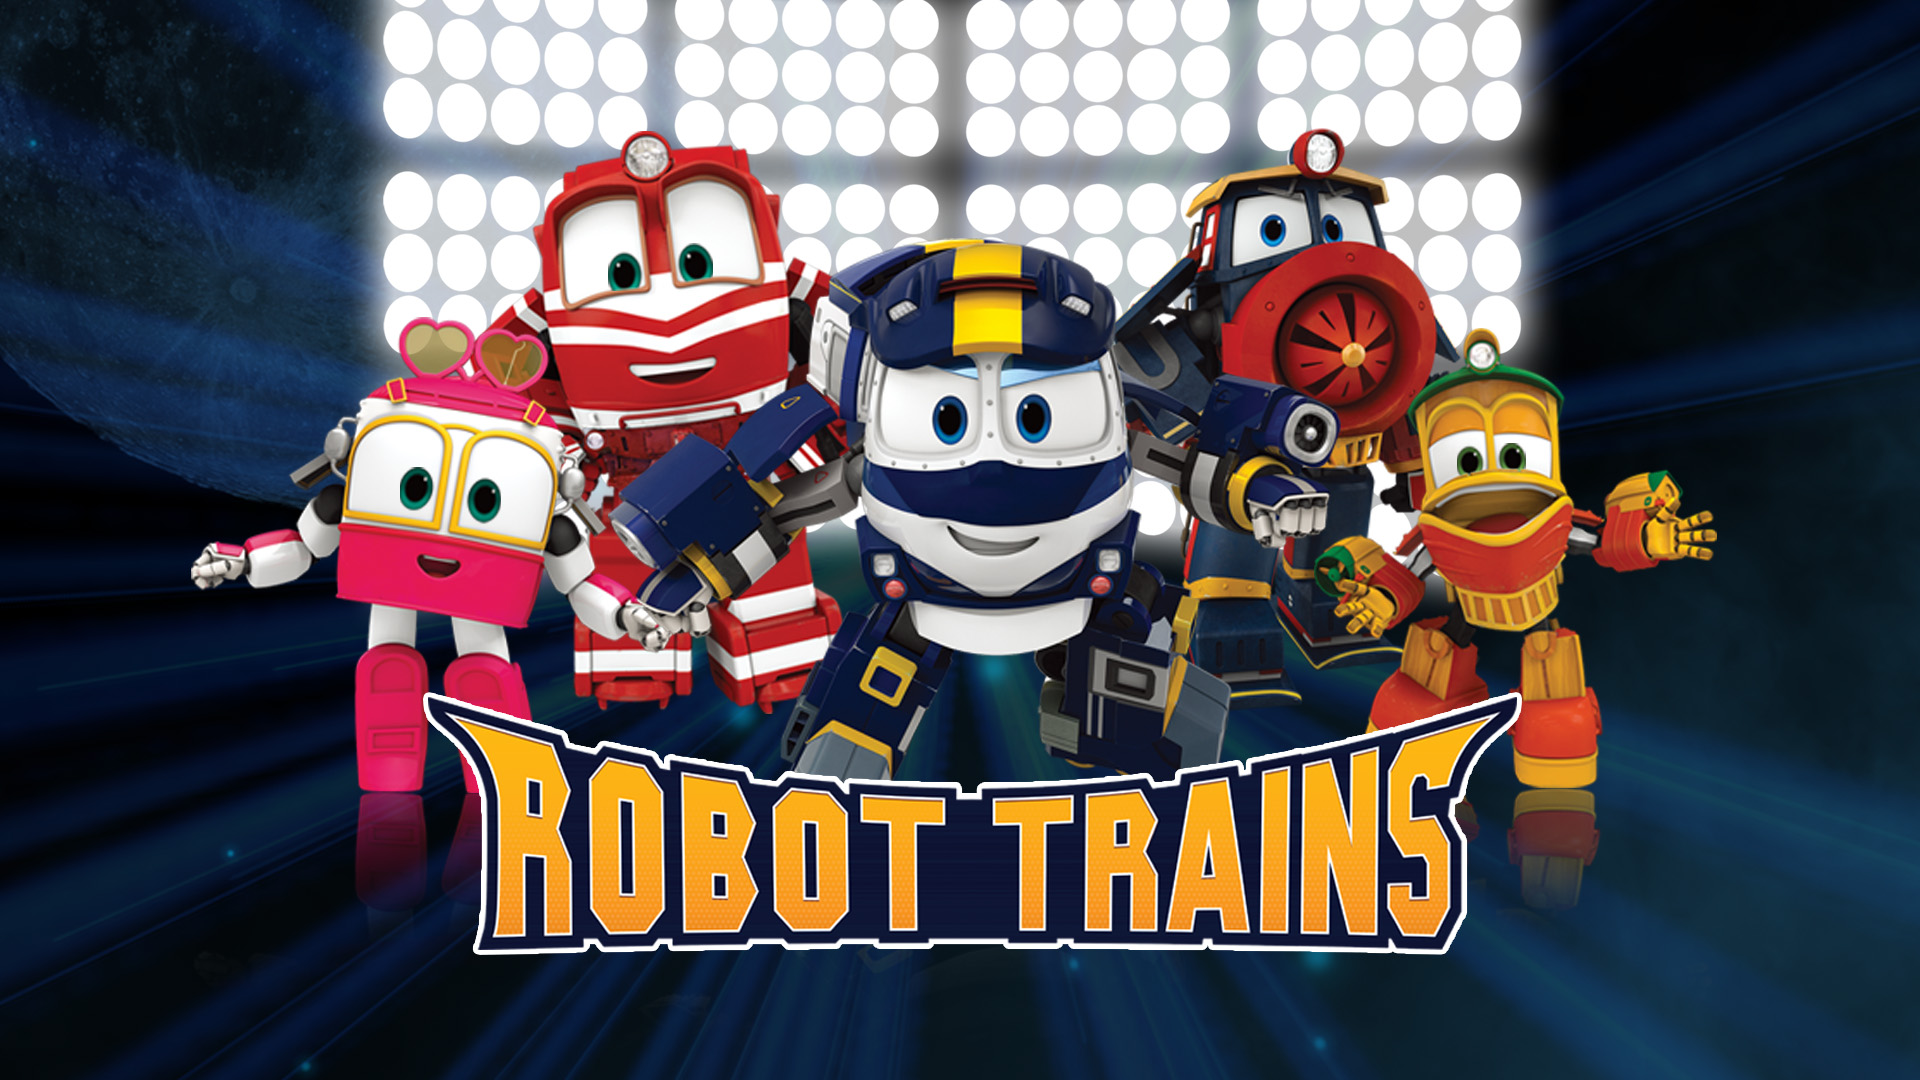 Doublage série animée Robot Trains diffusée sur Gulli